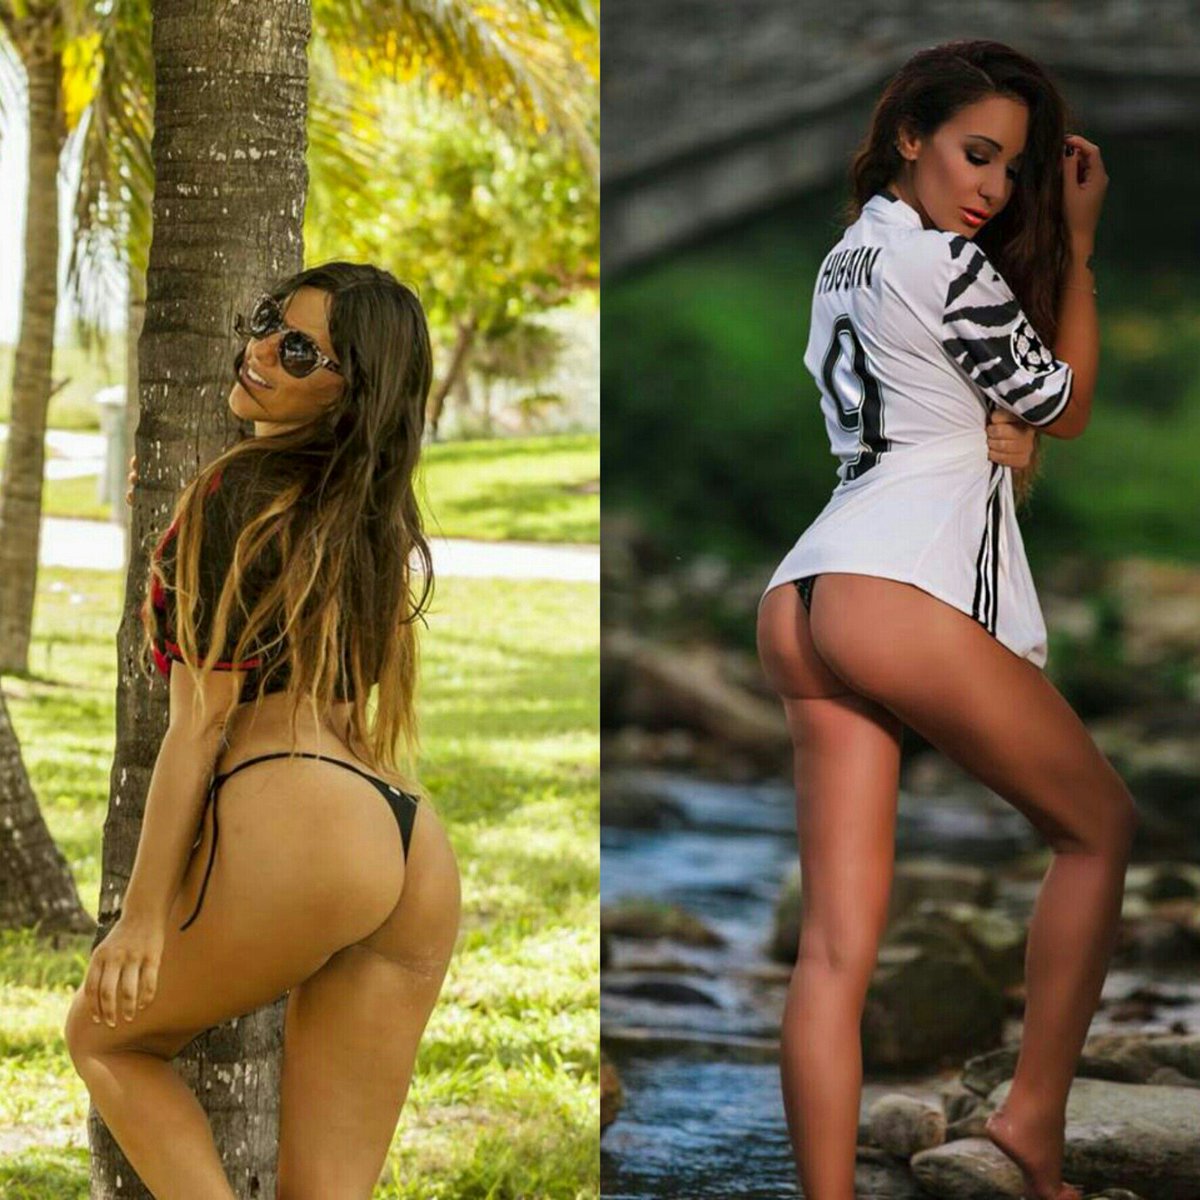 RT @courpotin_tony: Today is Grande Sexy Italiana Girls @ClaudiaRomani and @ManuIaquinta Italiana Girls Beauty https://t.co/5CkzjUq4W2